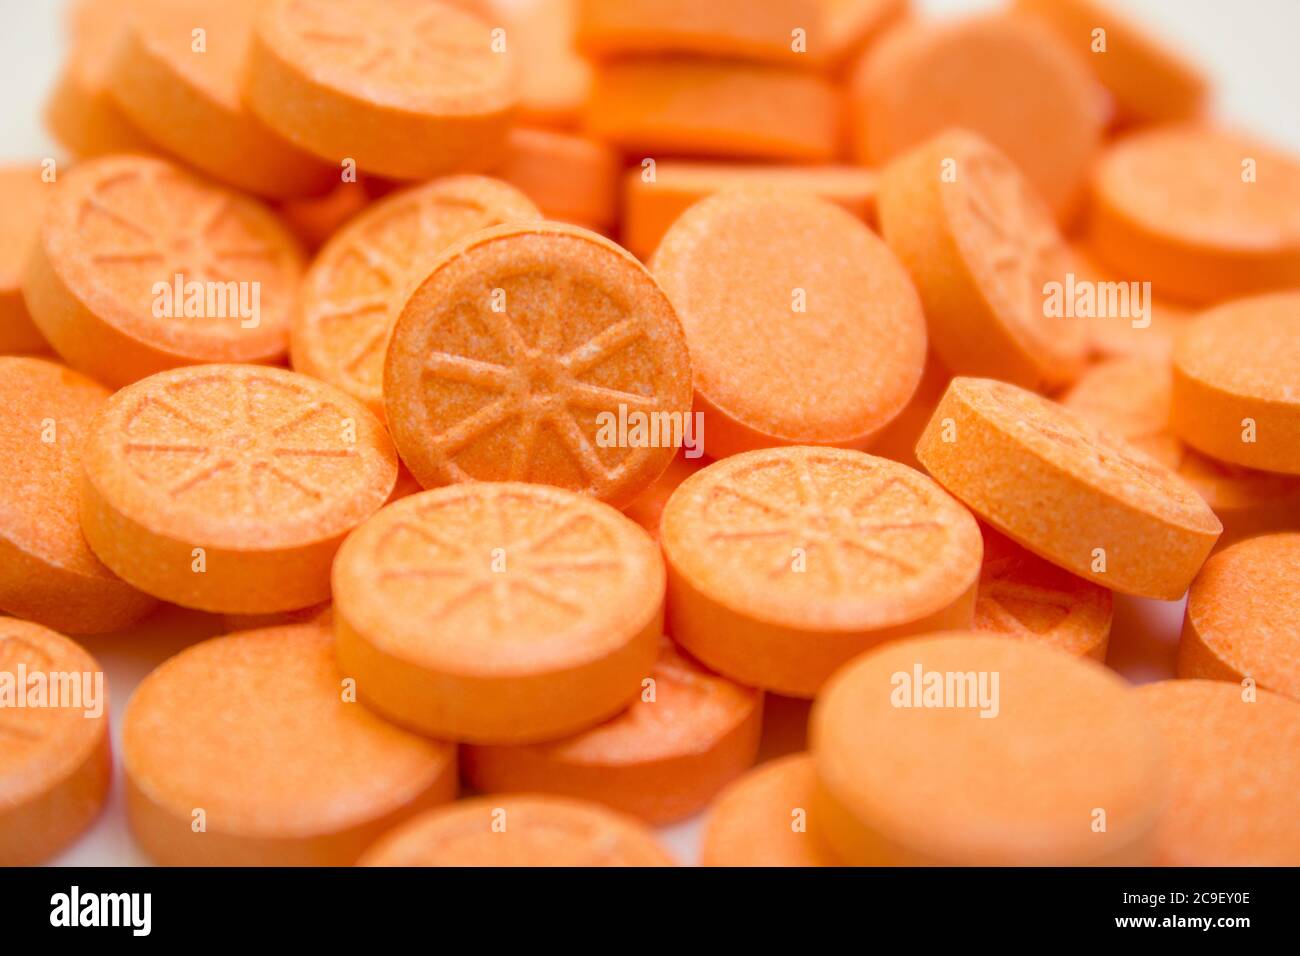 Viele Tabletten und orangenes Vitamin auf weißem Hintergrund - Schutz vor Grippe bei Quarantäne, Coronavirus, covid19 Stockfoto